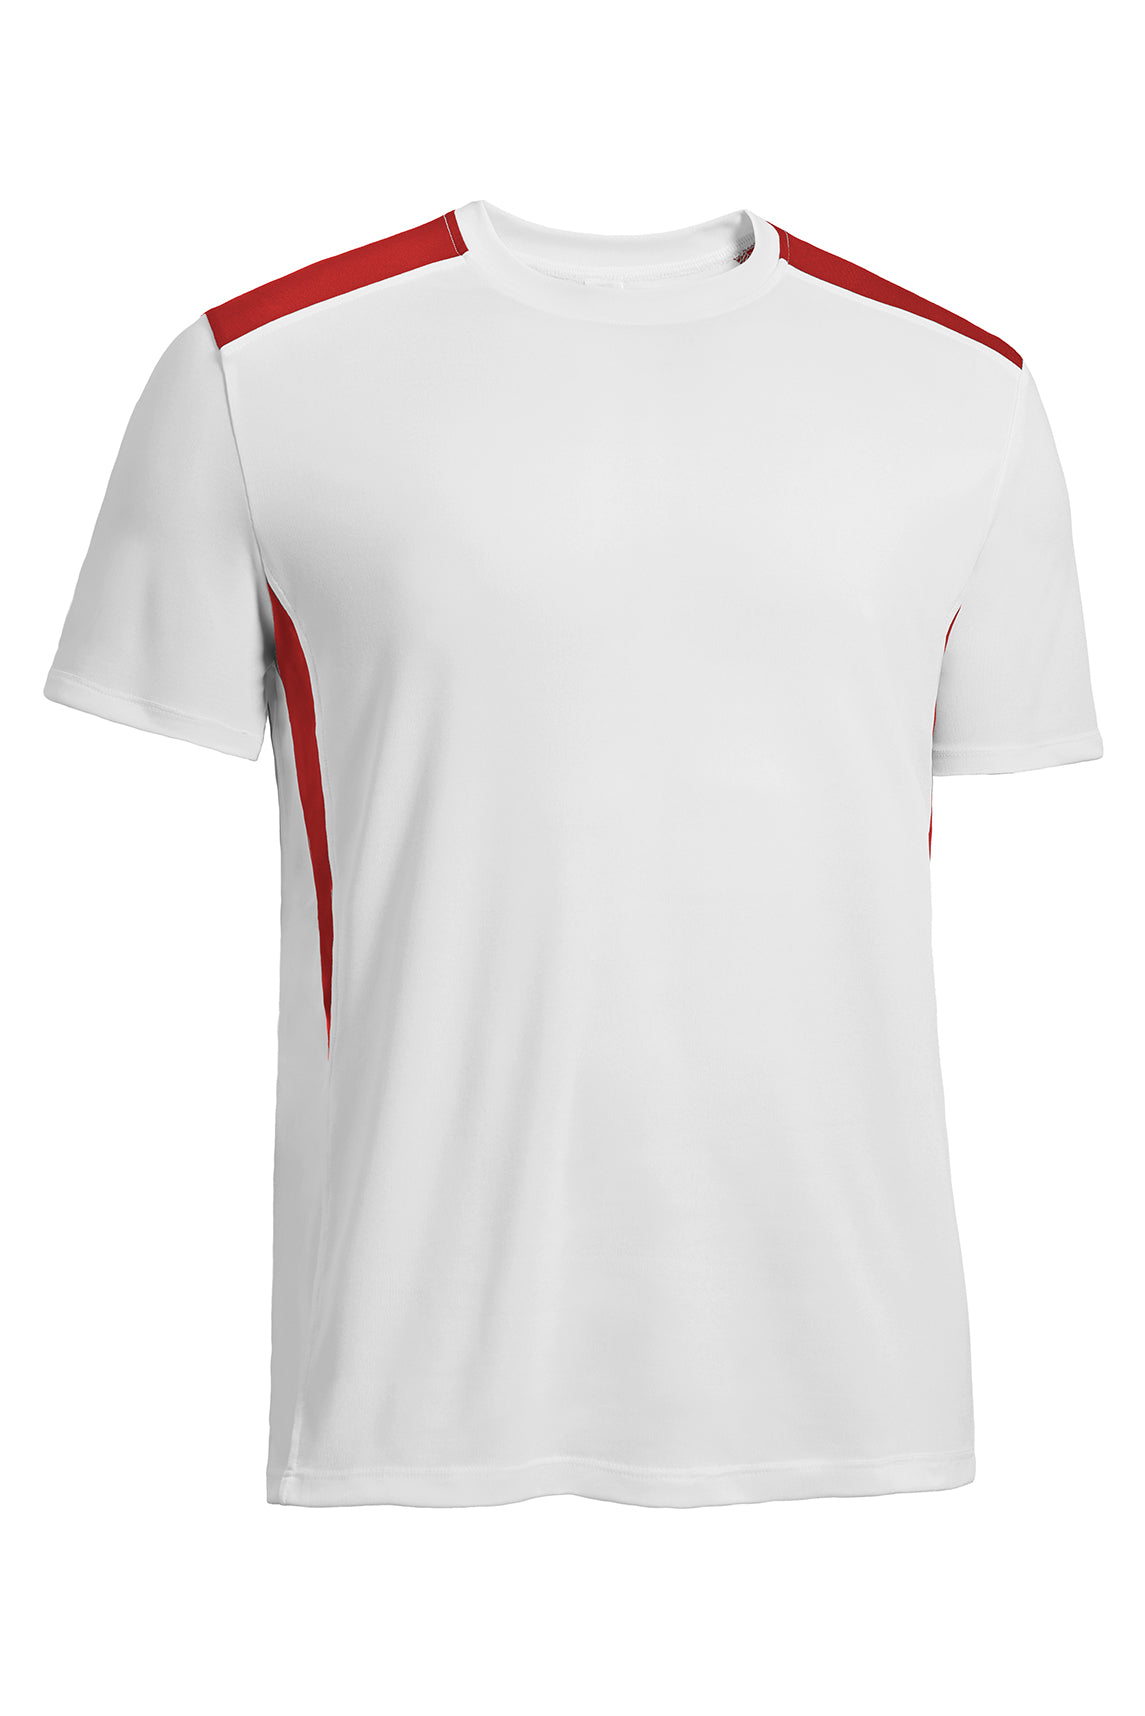 AI838🇺🇸 DriMax™ Stadium Tee - Expert Brand #WHITE RED